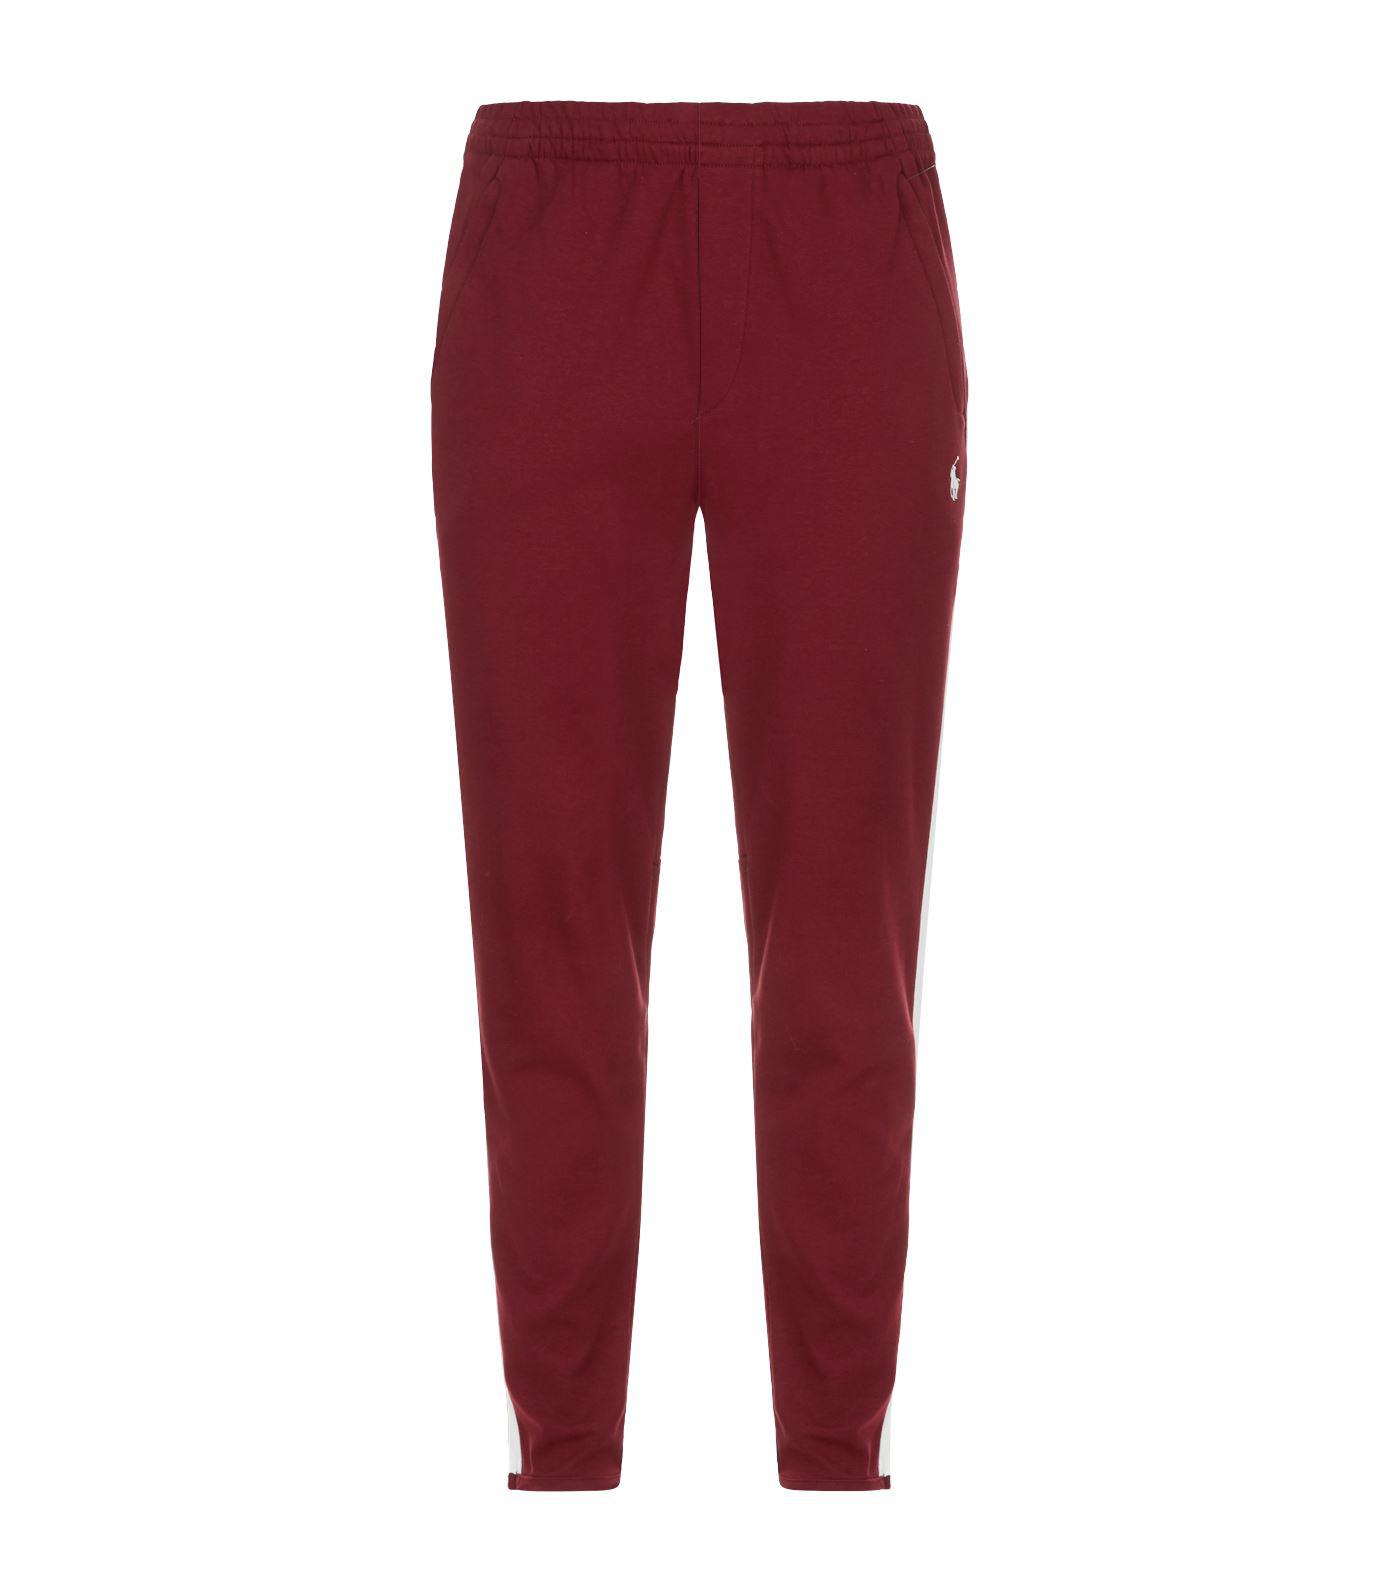 Lyst - Polo Ralph Lauren Side Stripe Sweatpants in Red for Men